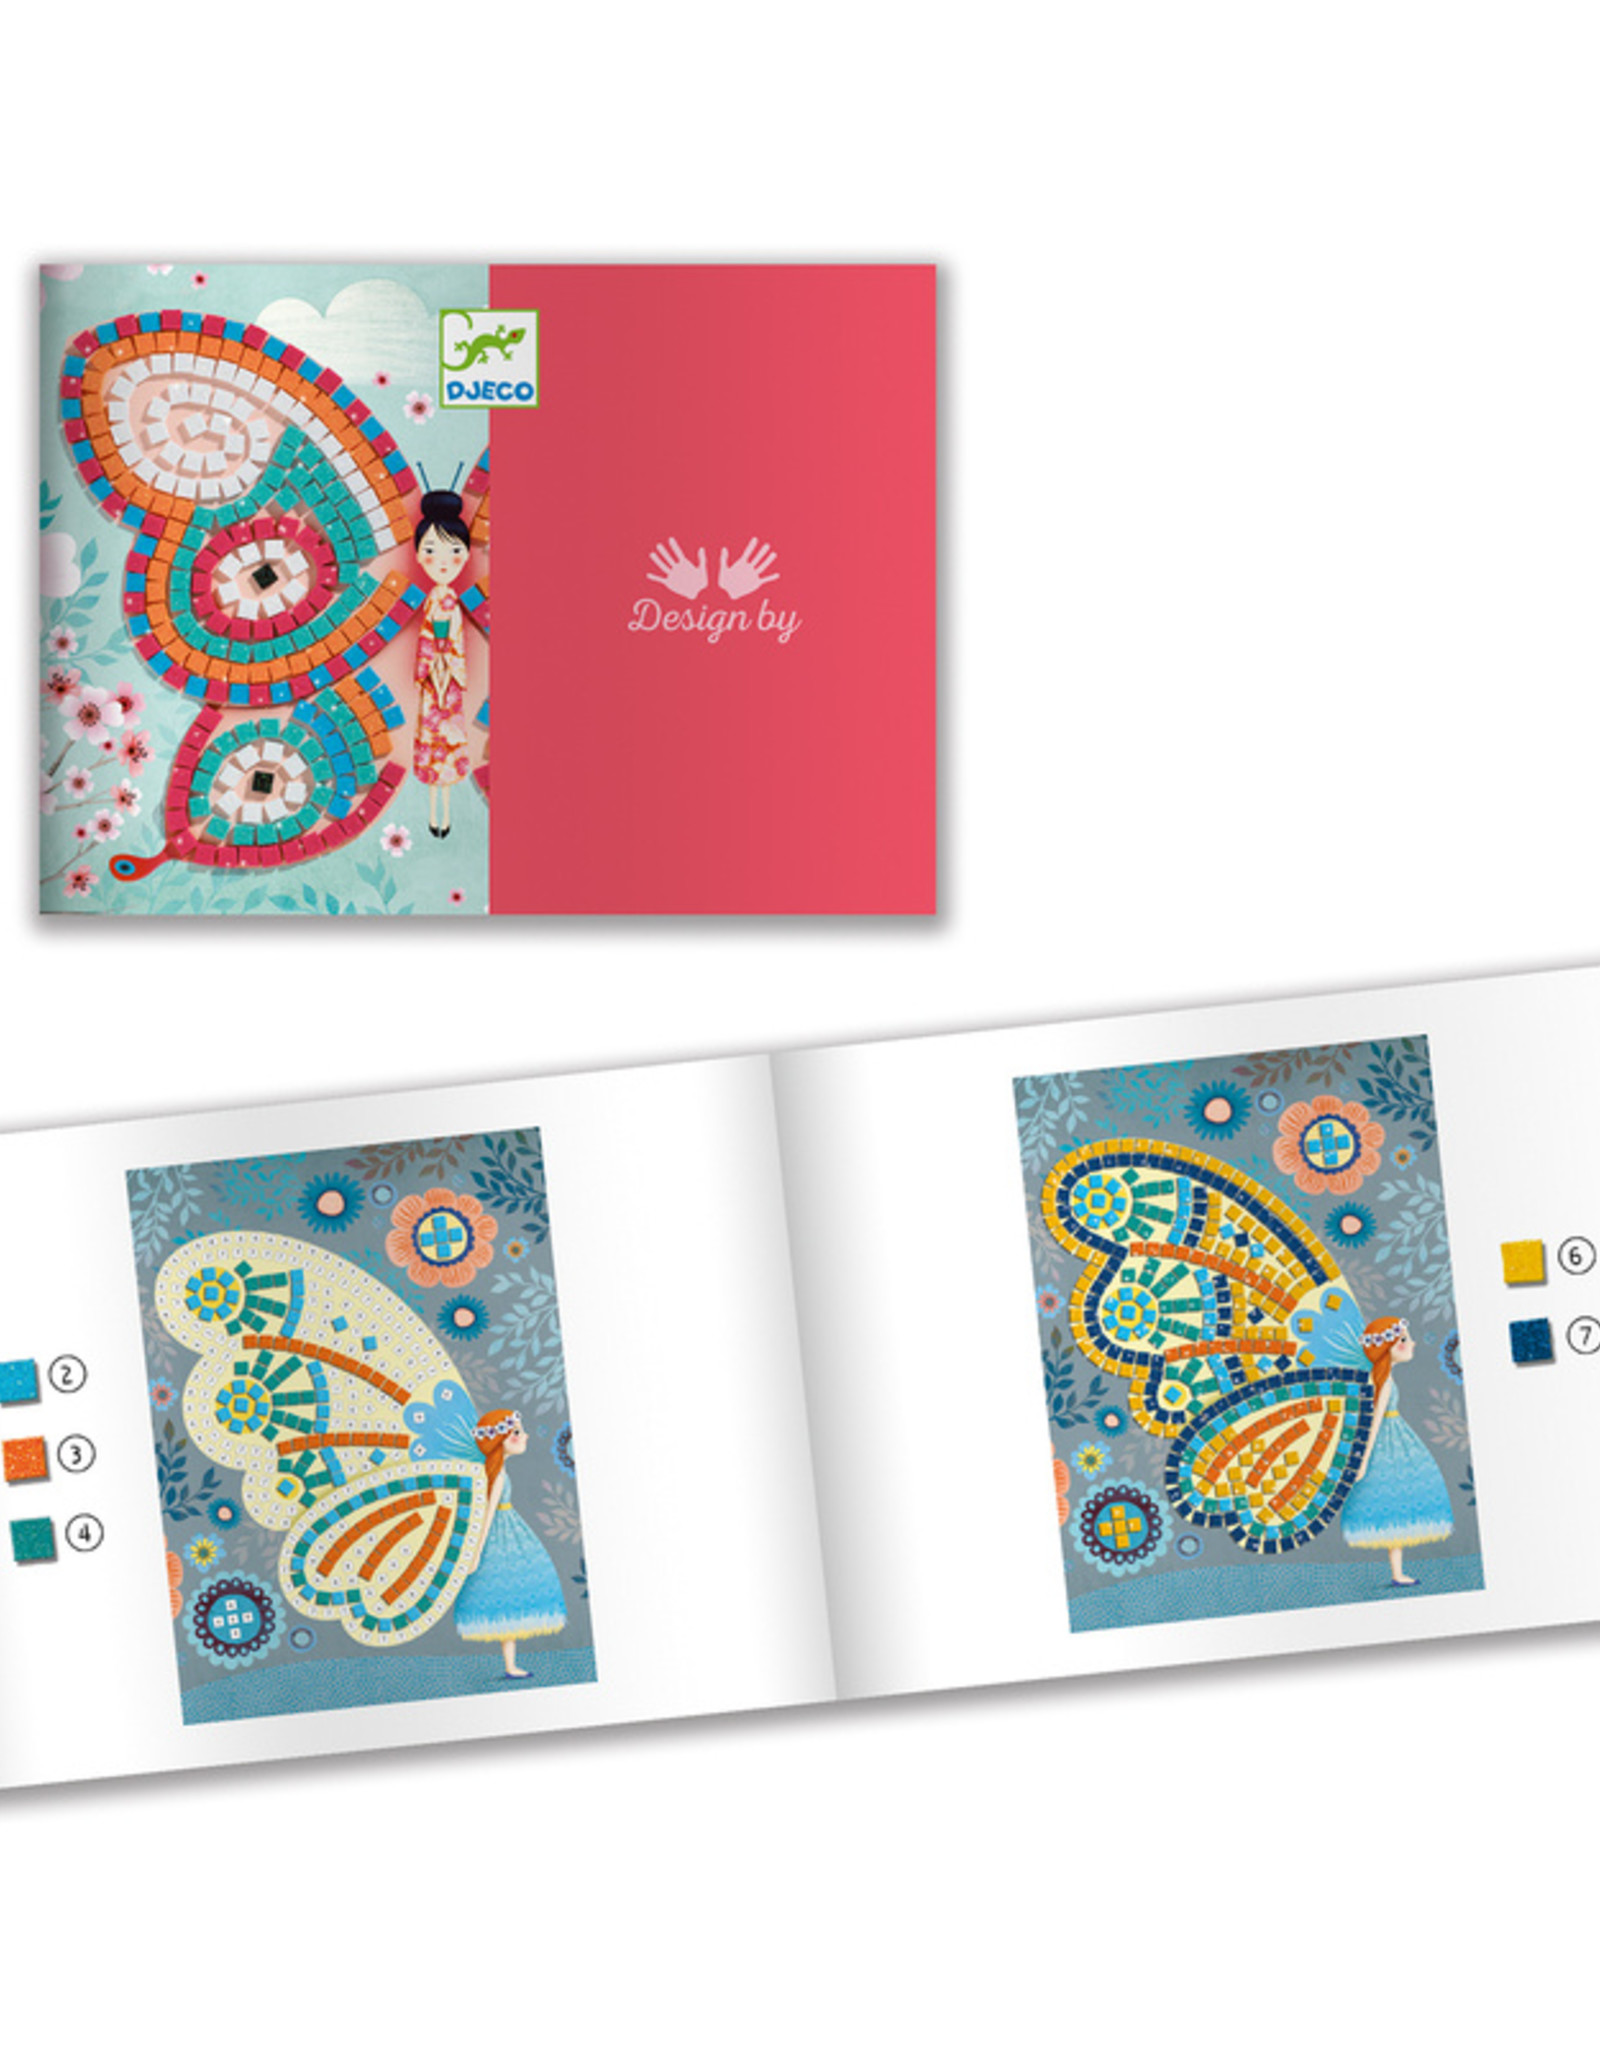 Djeco Djeco - Mosaics Butterfly